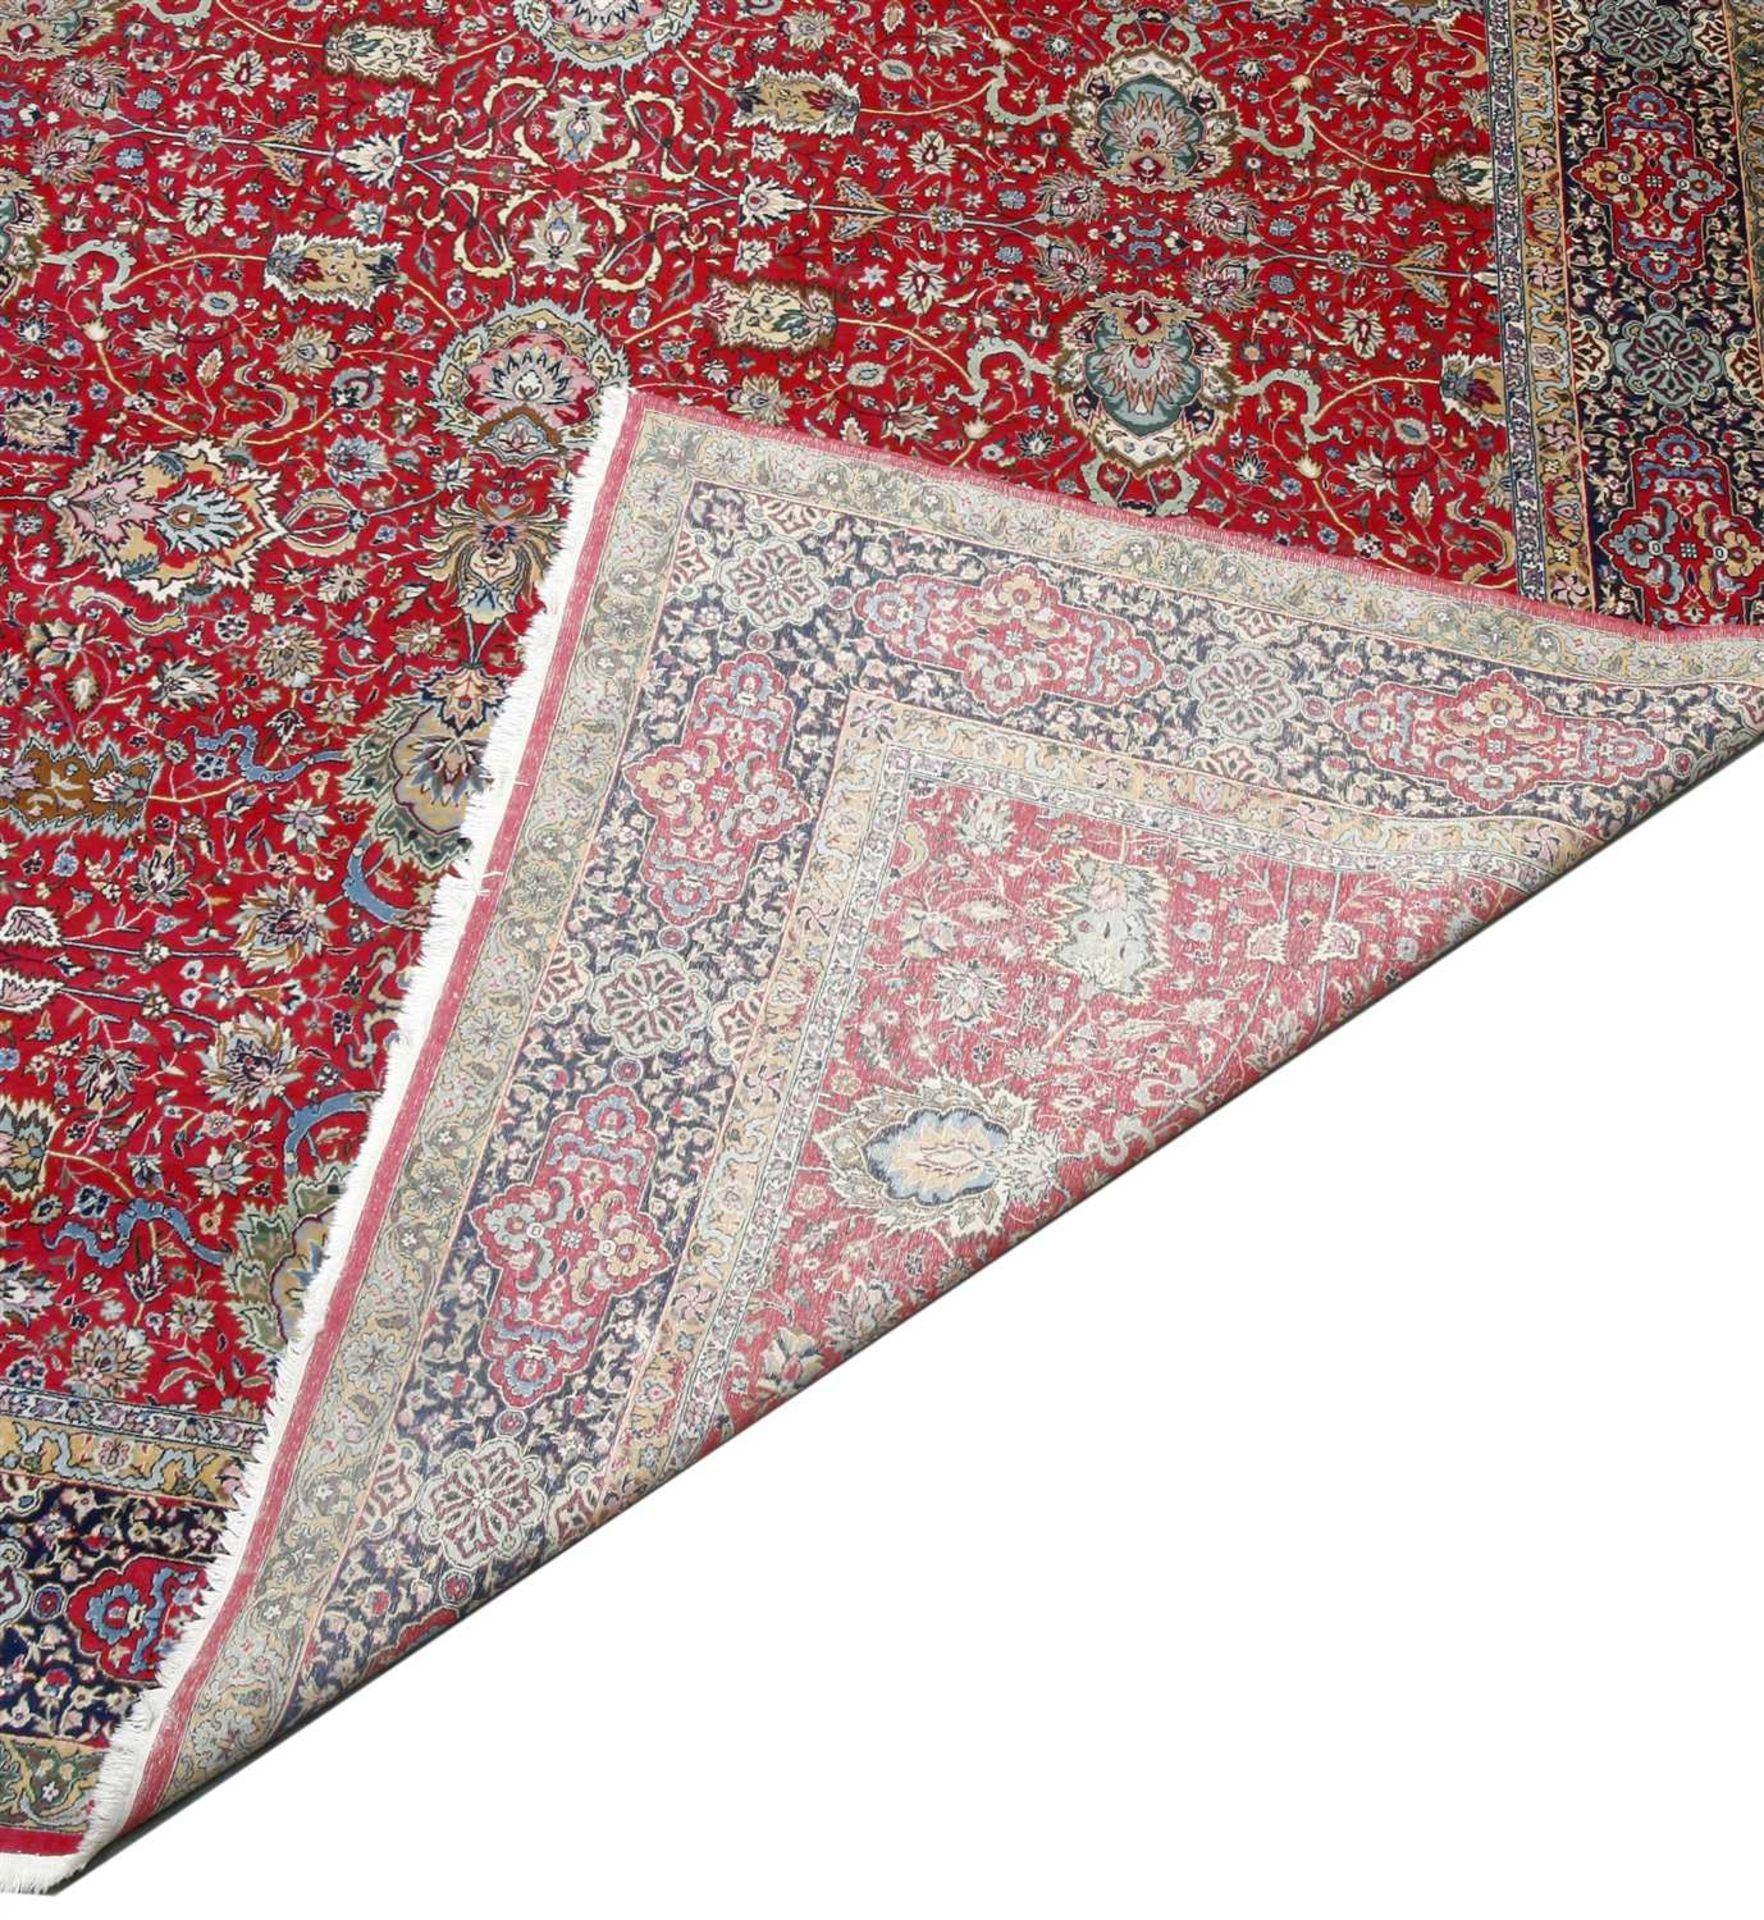 A large Indian Kashmir carpet, - Image 2 of 2